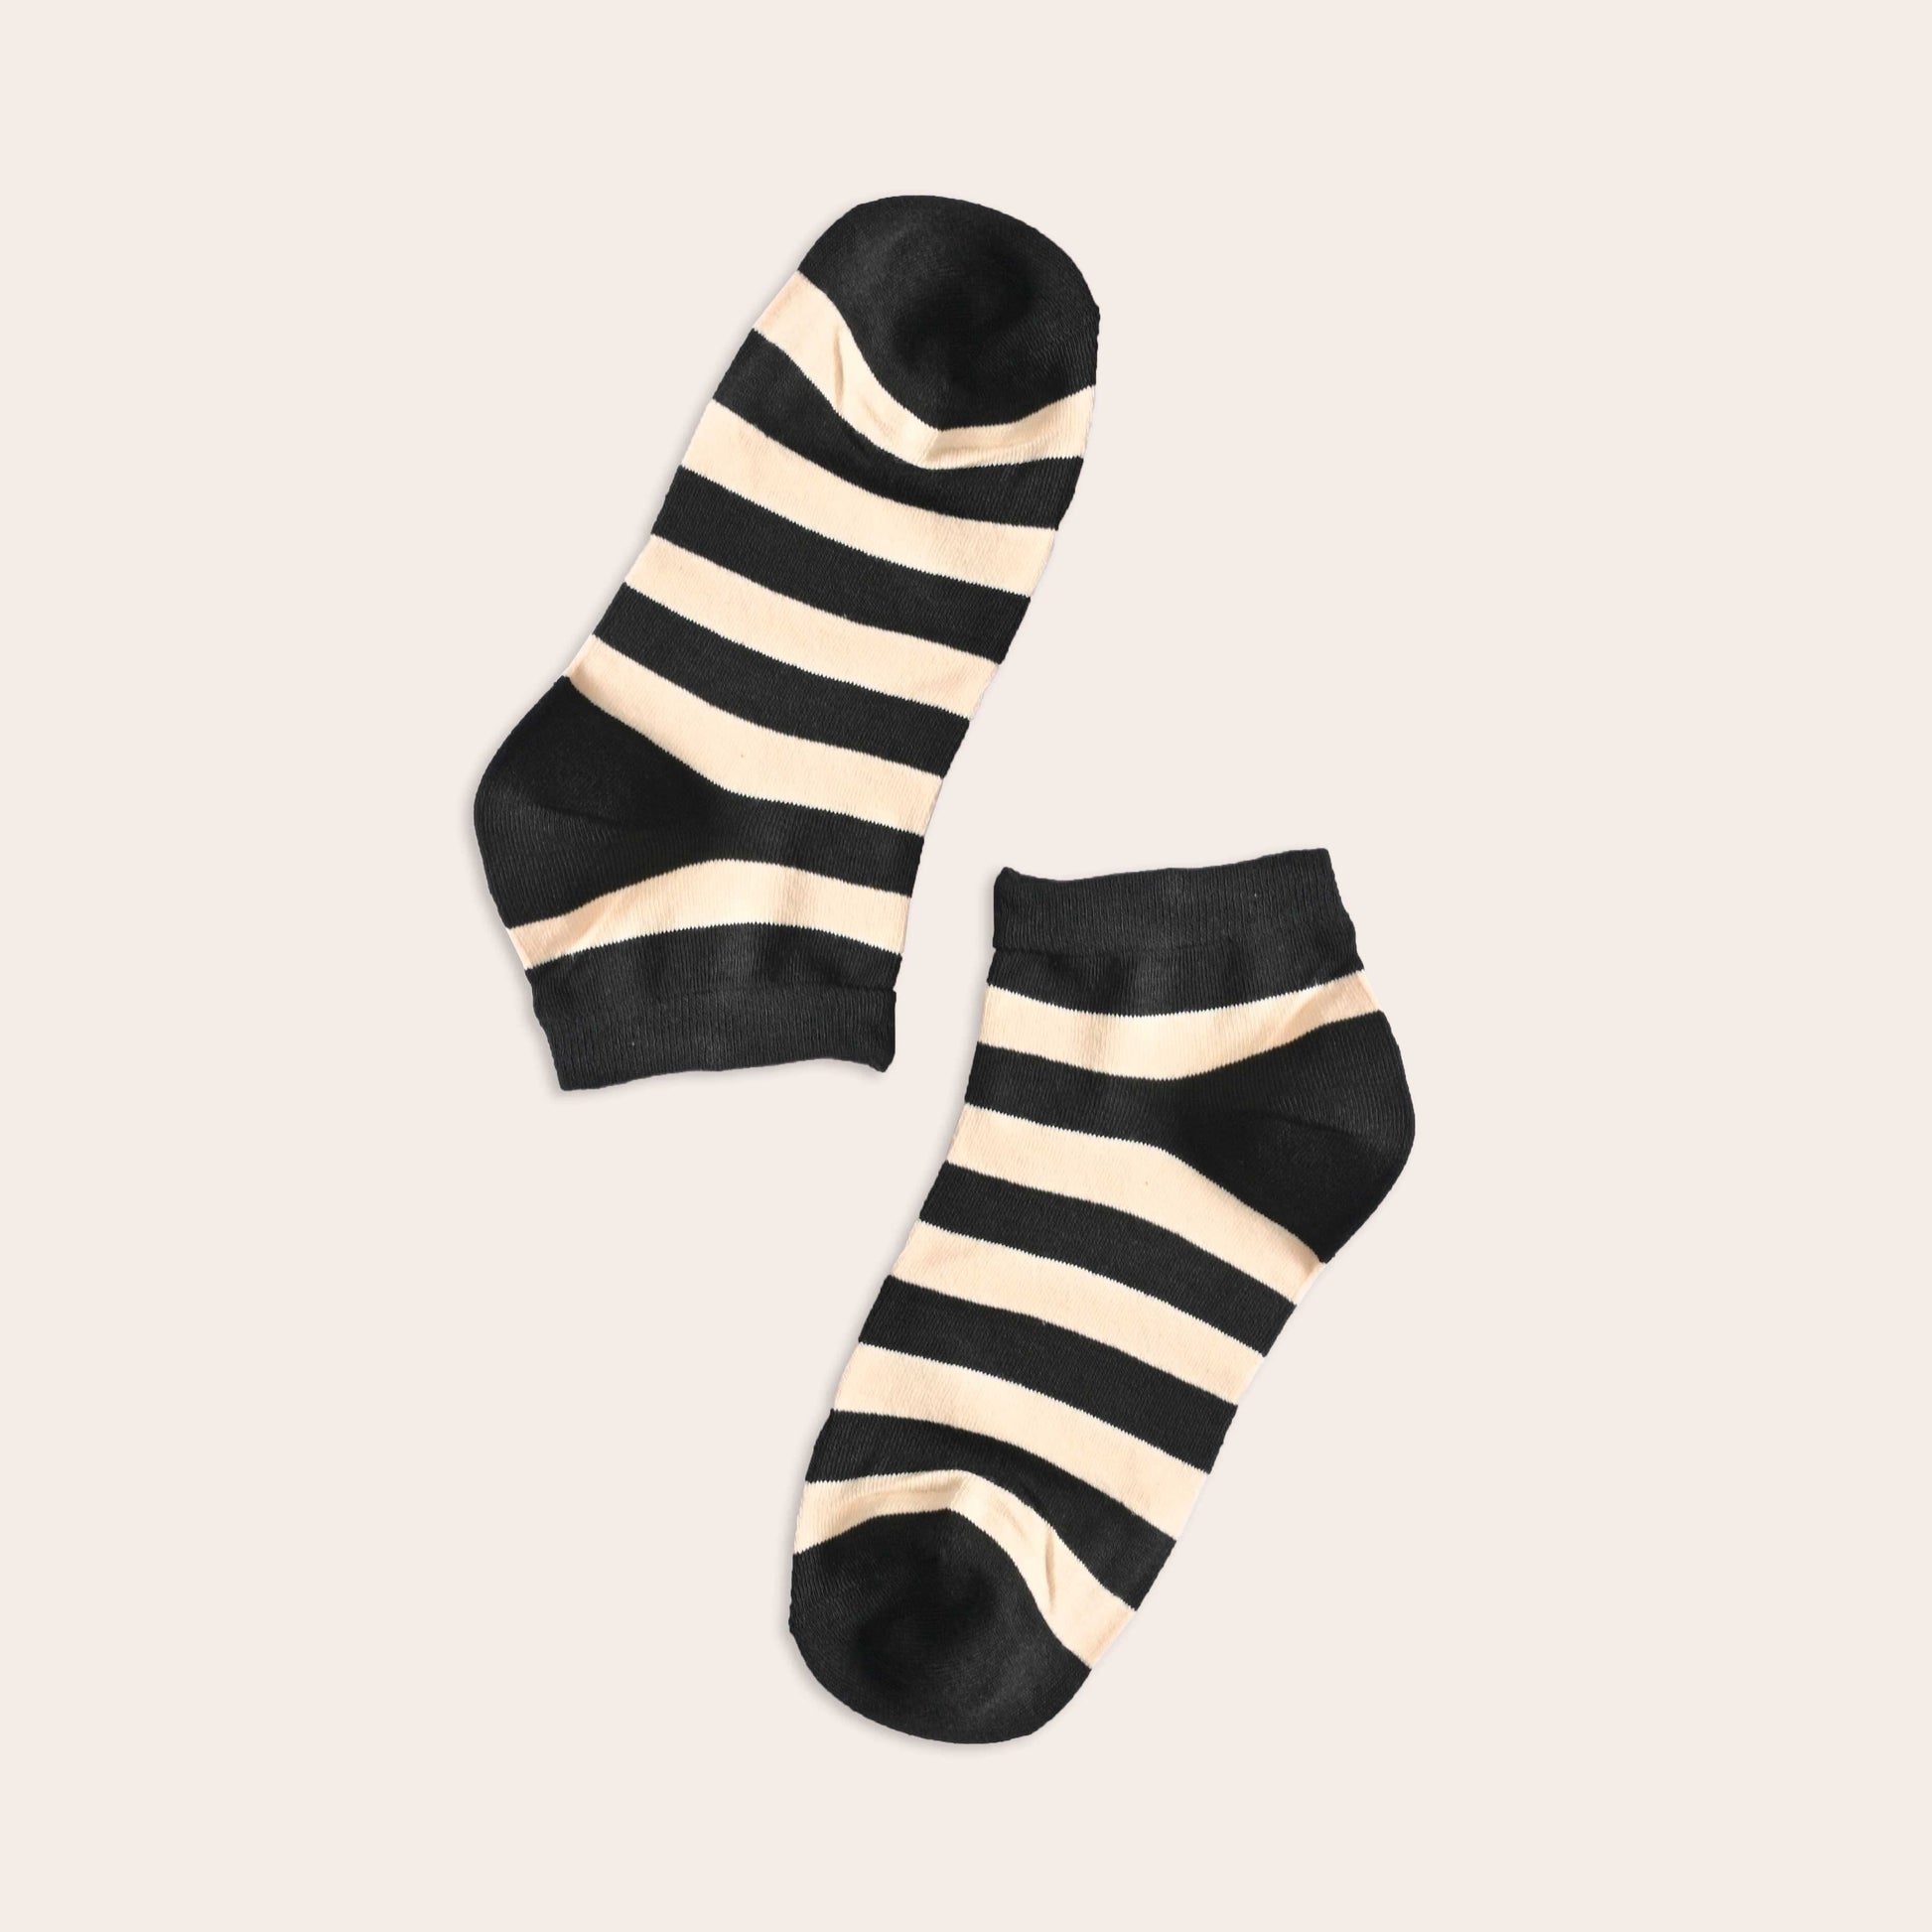 Tlia Men's Fashion Anklet Socks Socks SRL EUR 38-43 Cream D1